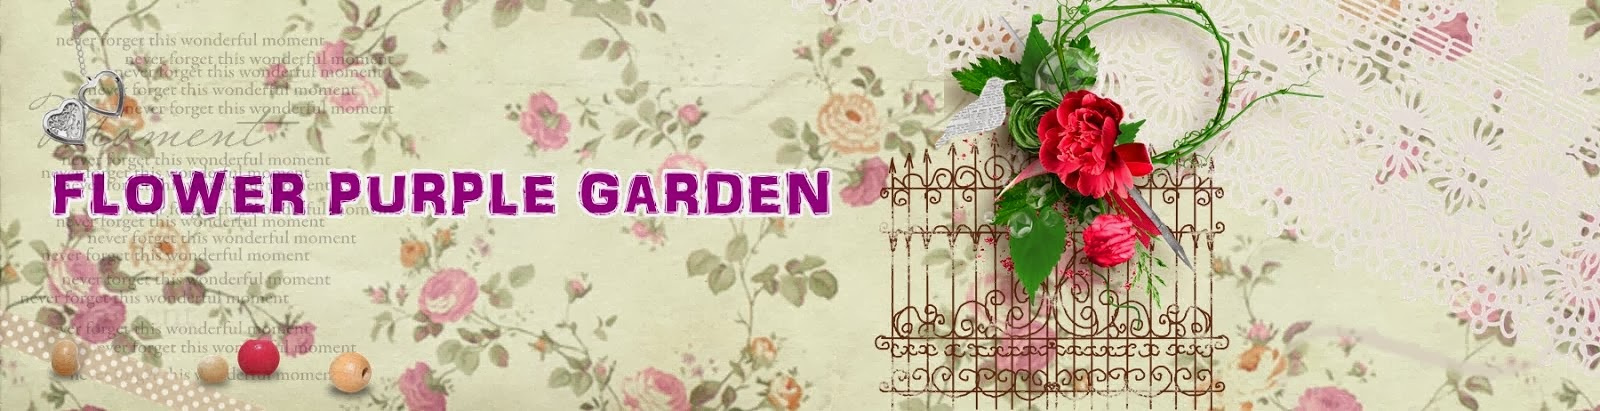 Flower's Purple Garden